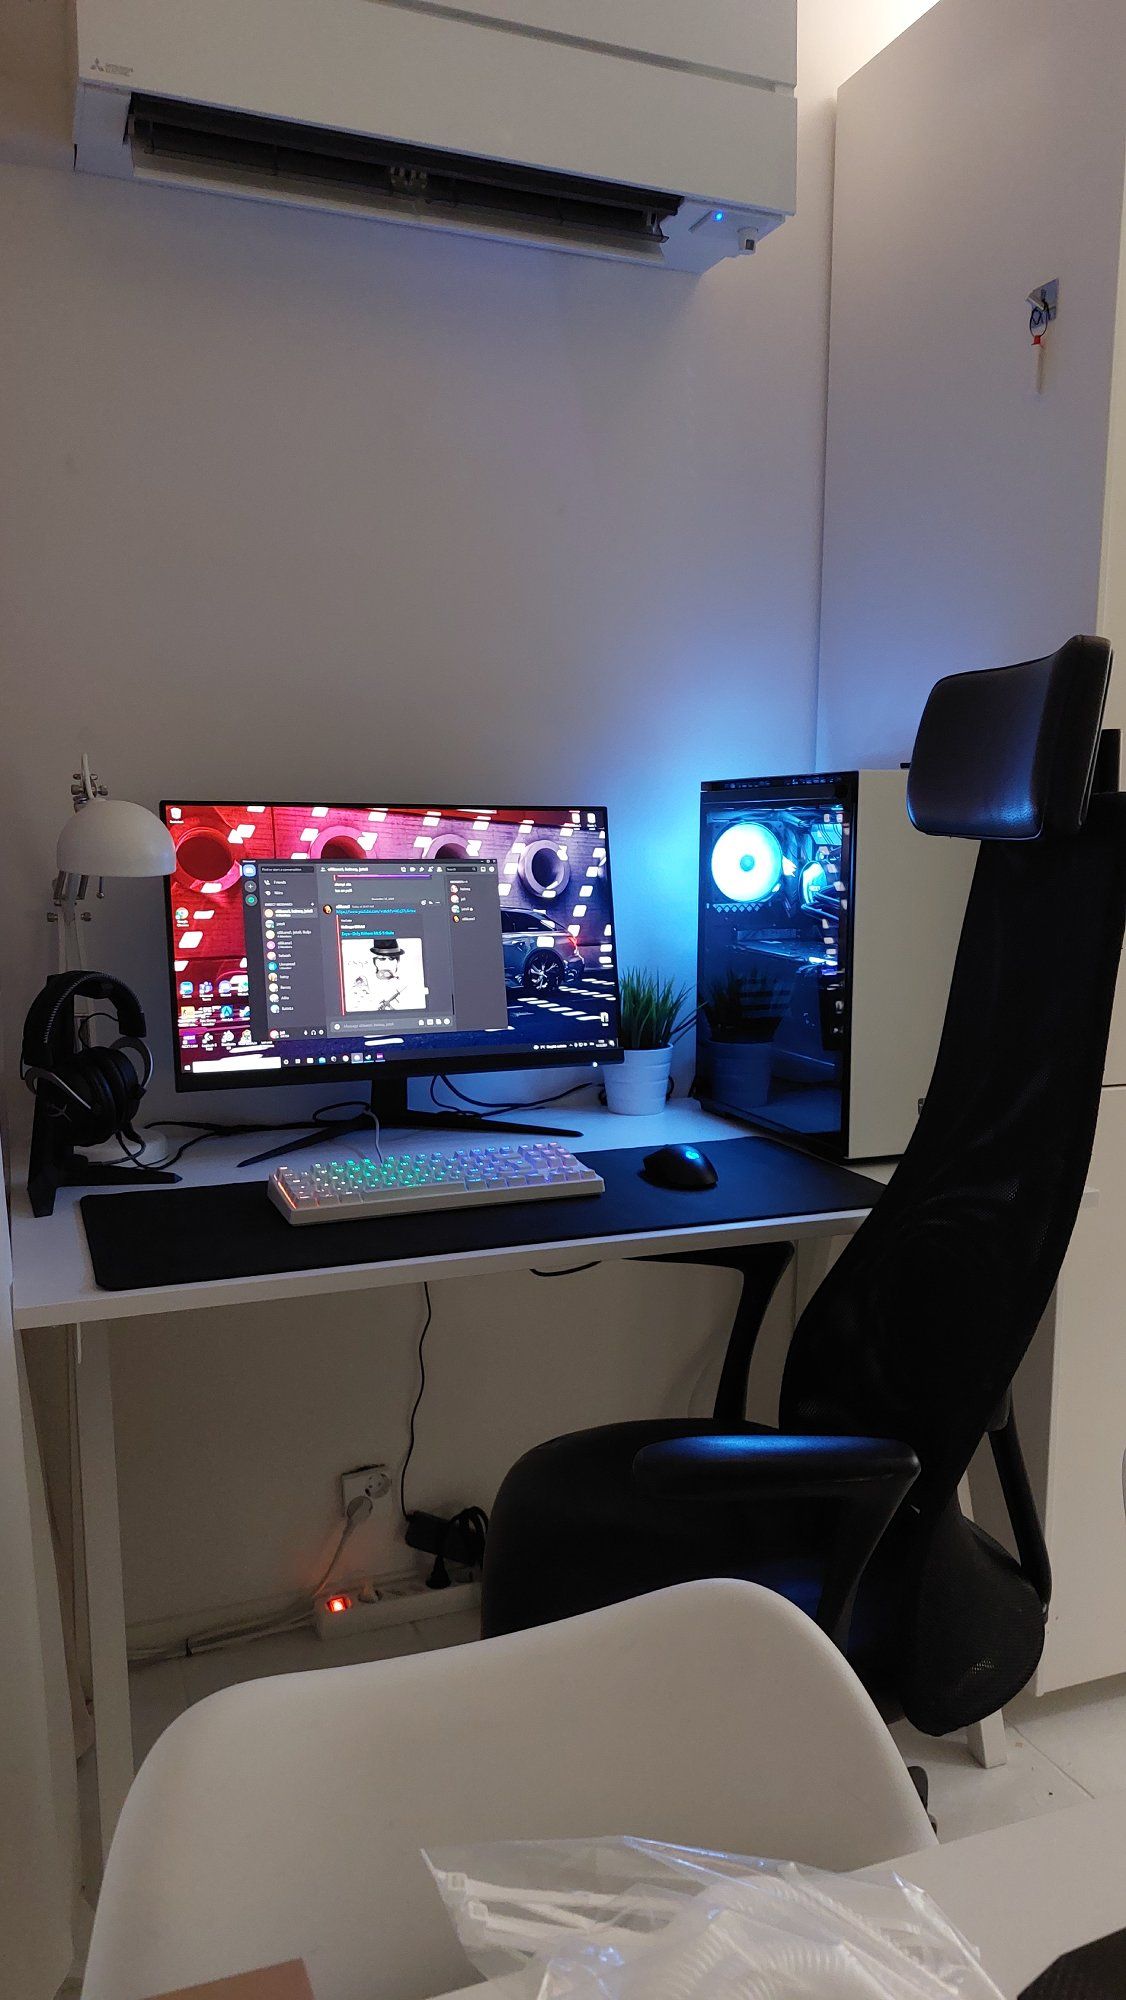 Joel’s old desk setup